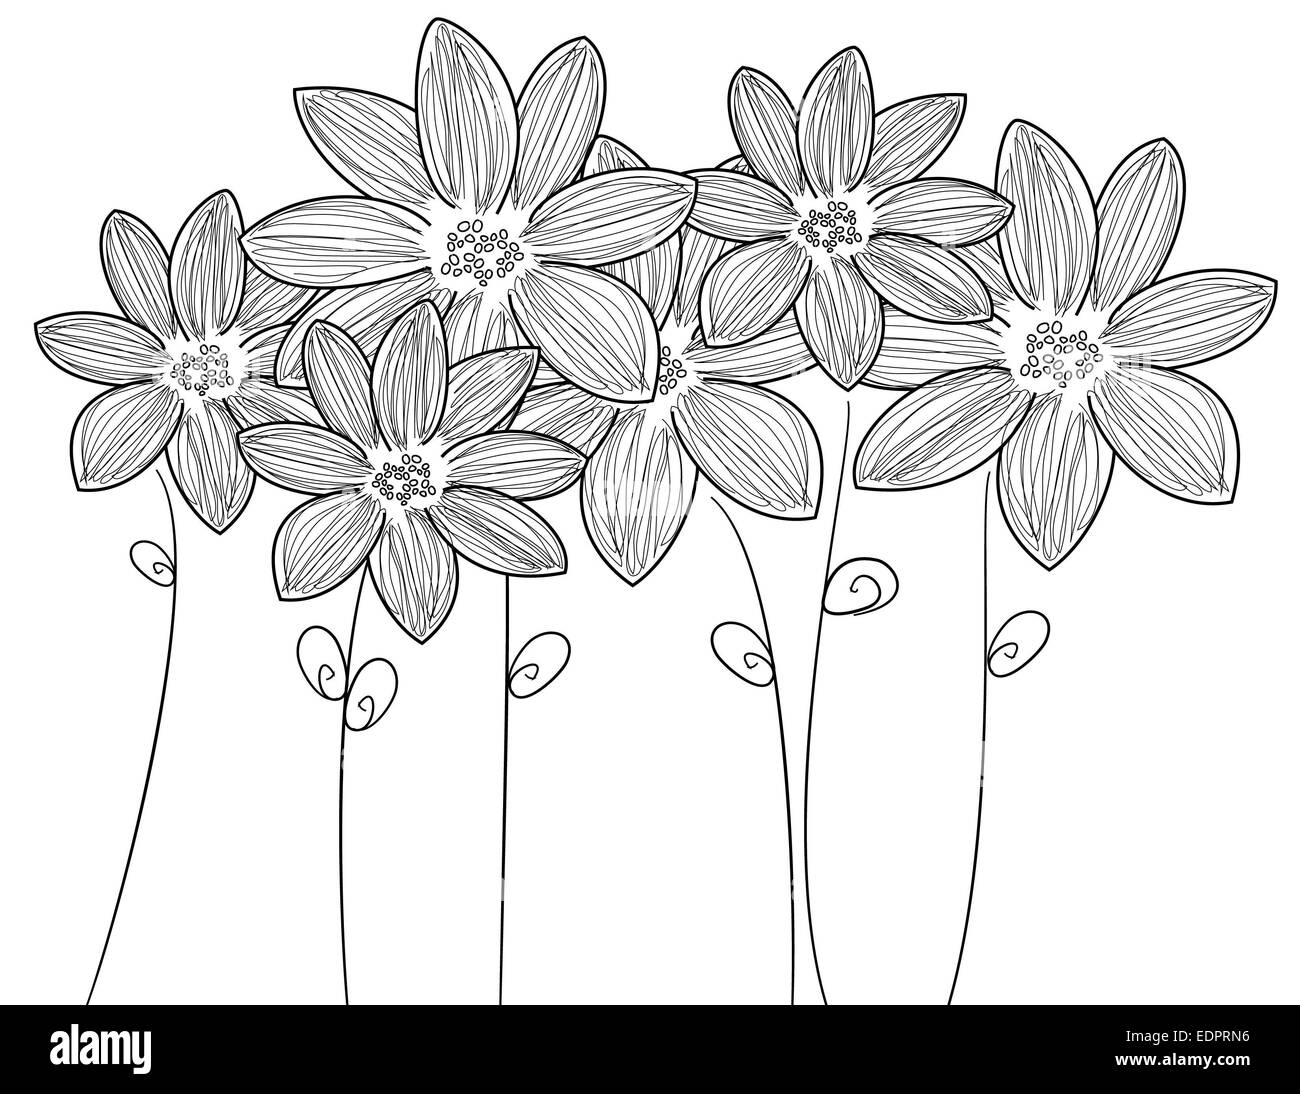 Delicato bianco & nero illustrazione sei fiori freschi con steli e foglie di decorativo o temi romantica Foto Stock